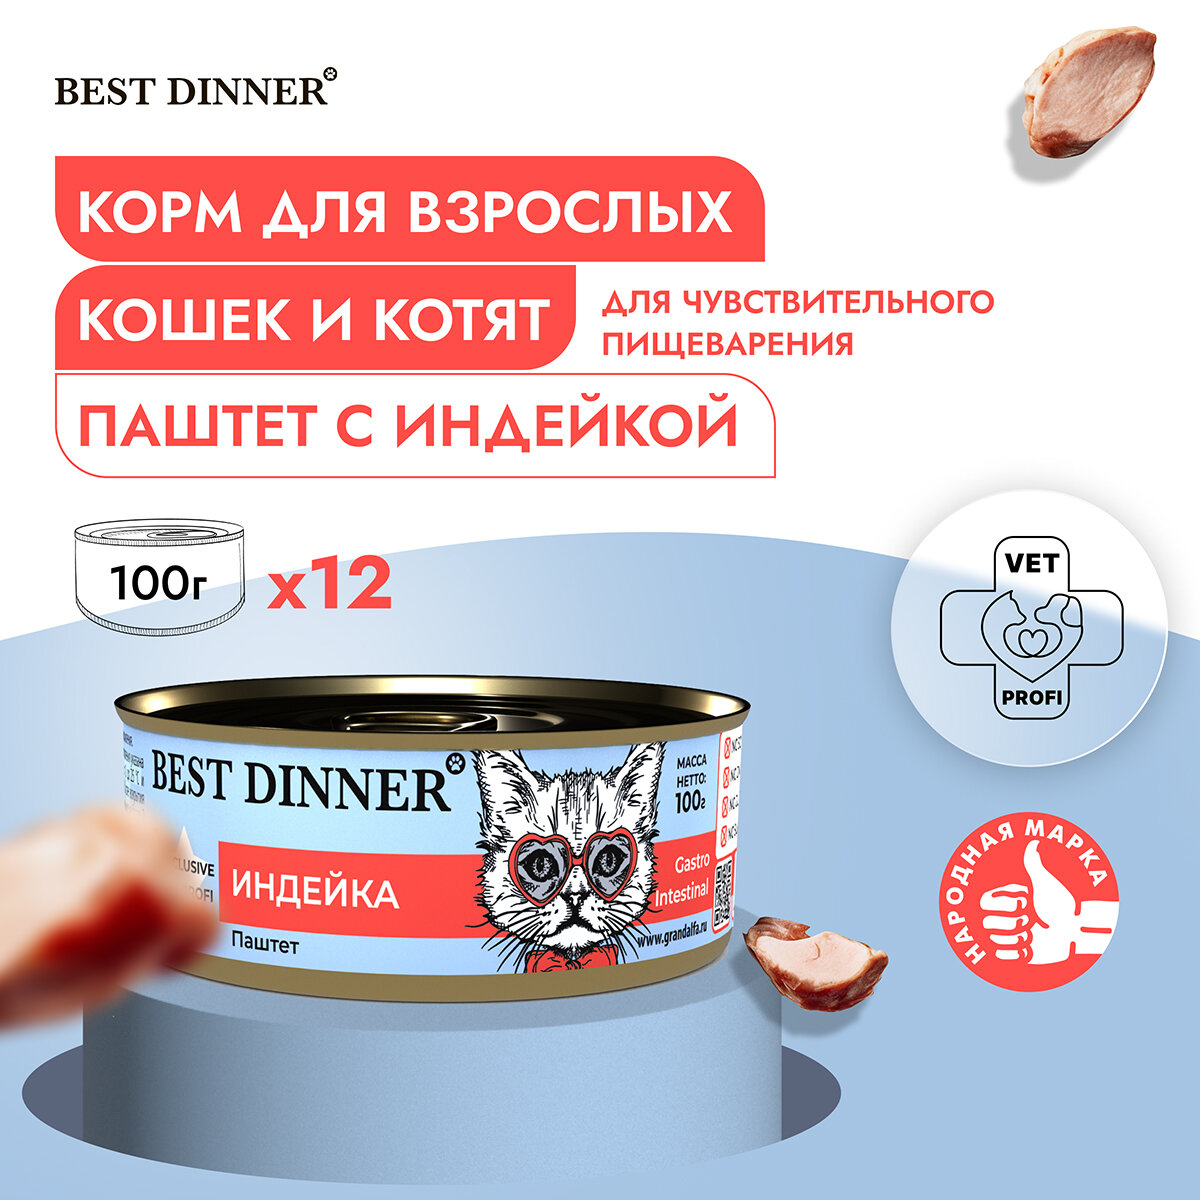 Влажный консервированный корм для кошек Бест Диннер Best Dinner для кошек Exclusive, индейка, 100гр. по 12шт.